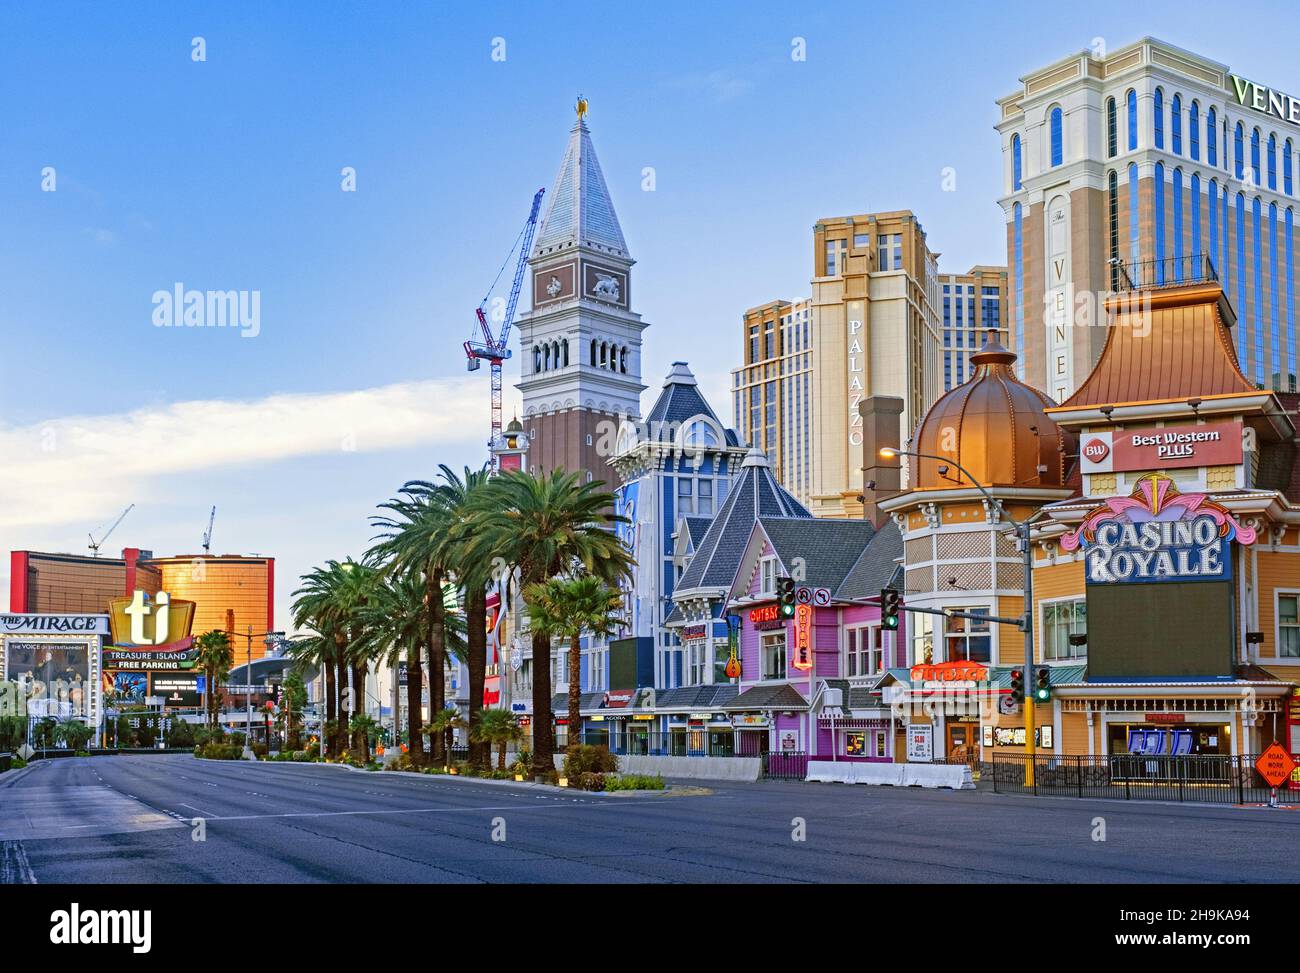 Strade deserte e vuote nella città di Las Vegas durante la pandemia di coronavirus COVID-19, Clark County, Nevada, Stati Uniti, USA Foto Stock